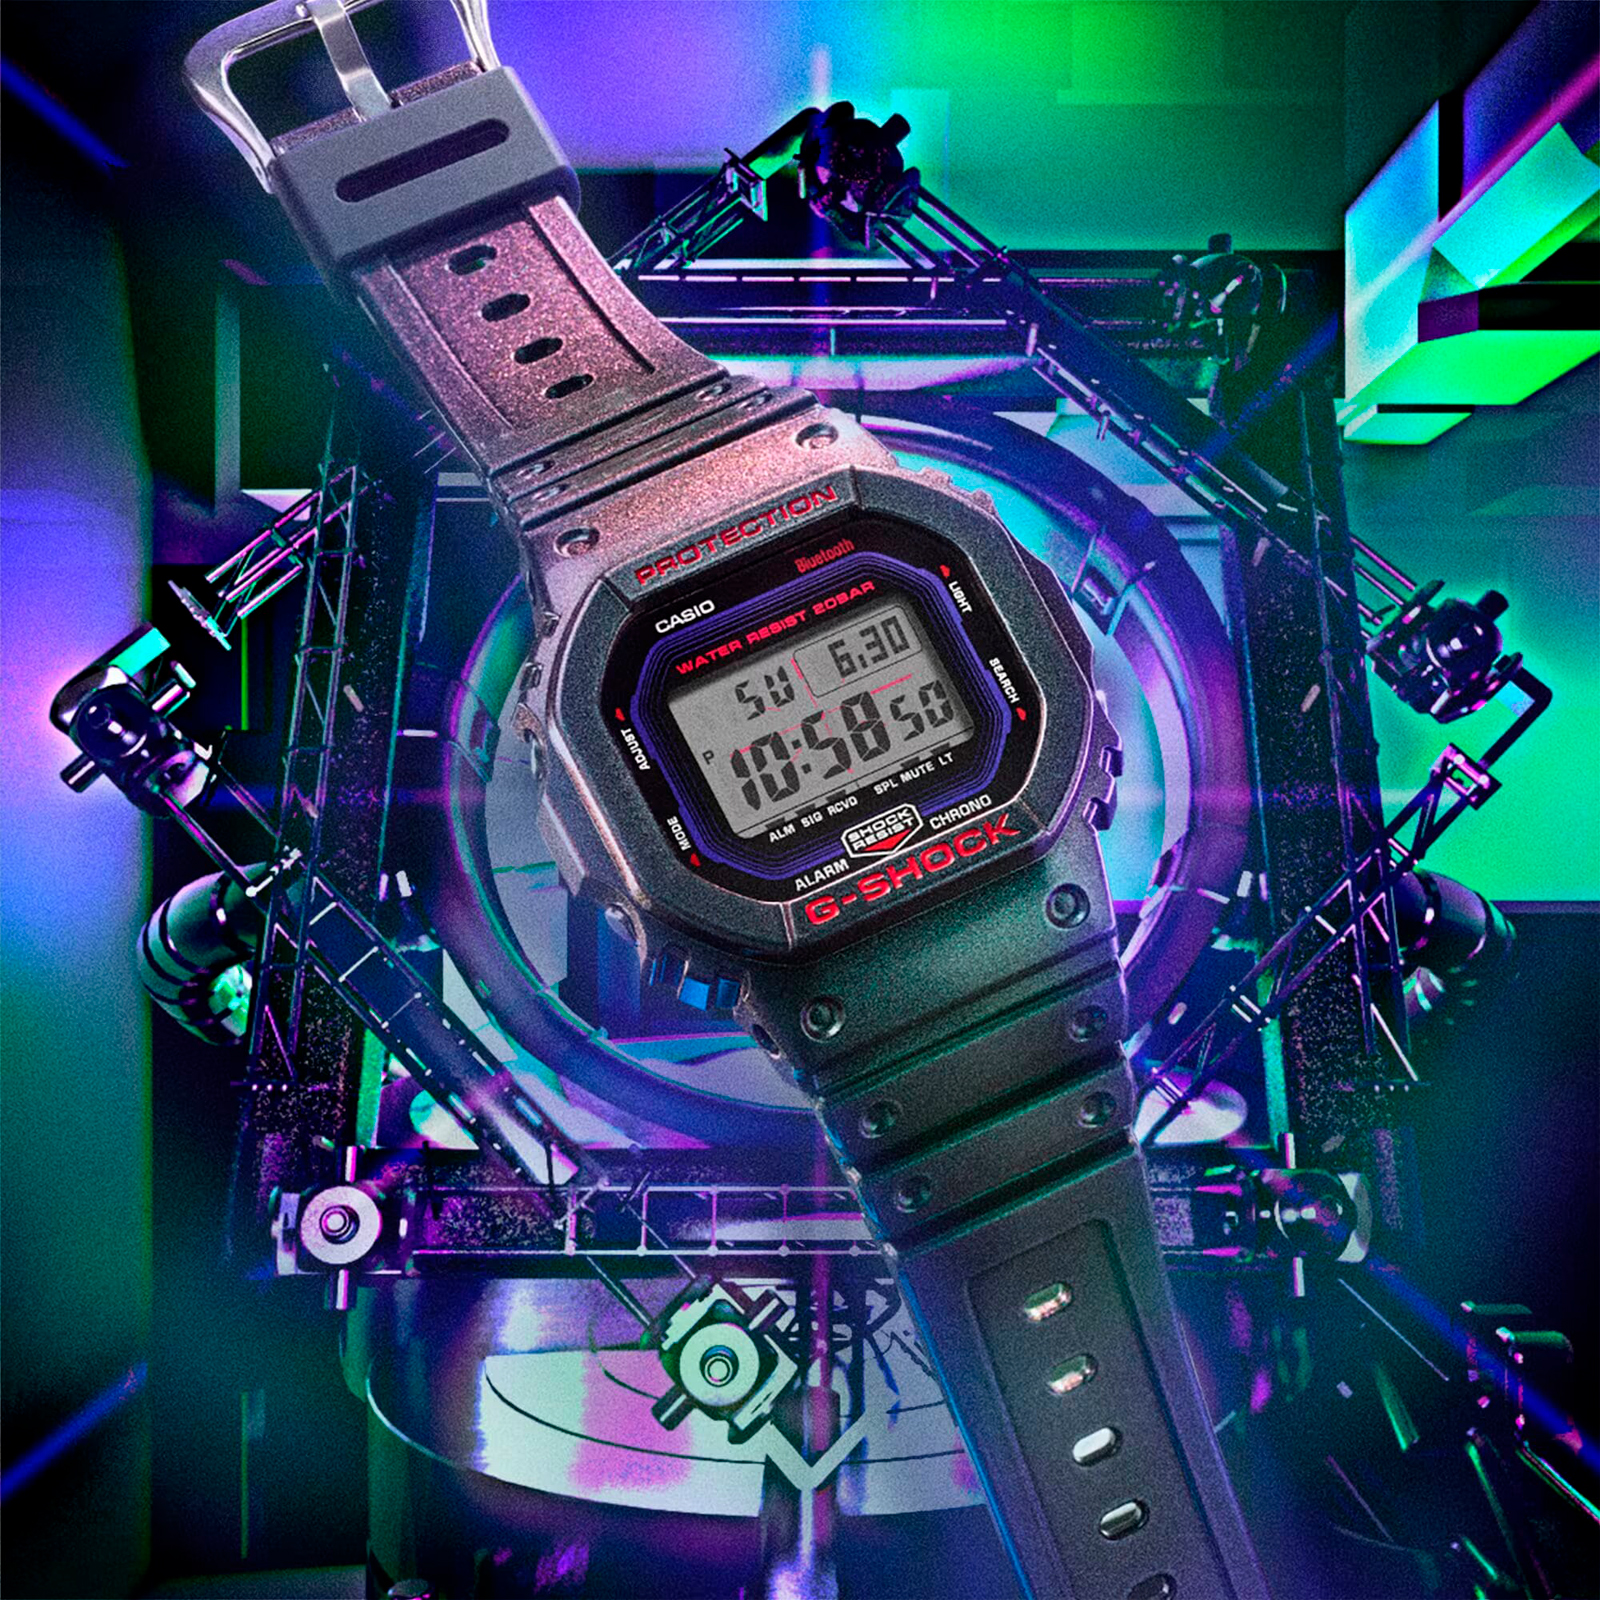 Reloj G-SHOCK DW-B5600AH-6D Resina Hombre Purpura/Verde